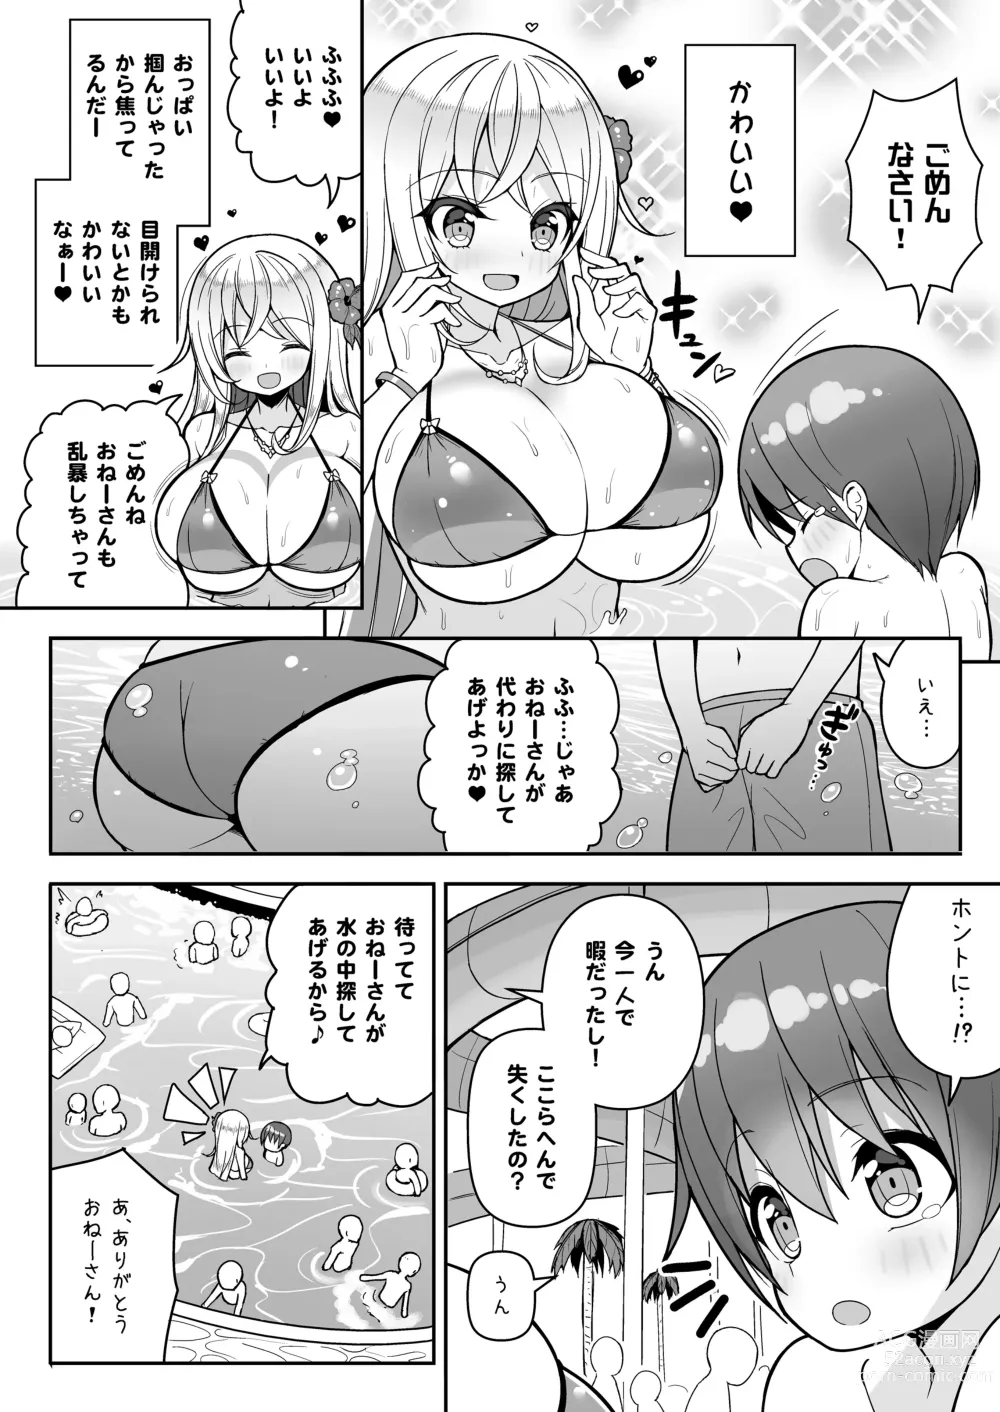 Page 5 of doujinshi Ikenai Bikini no Onee-san + Omake